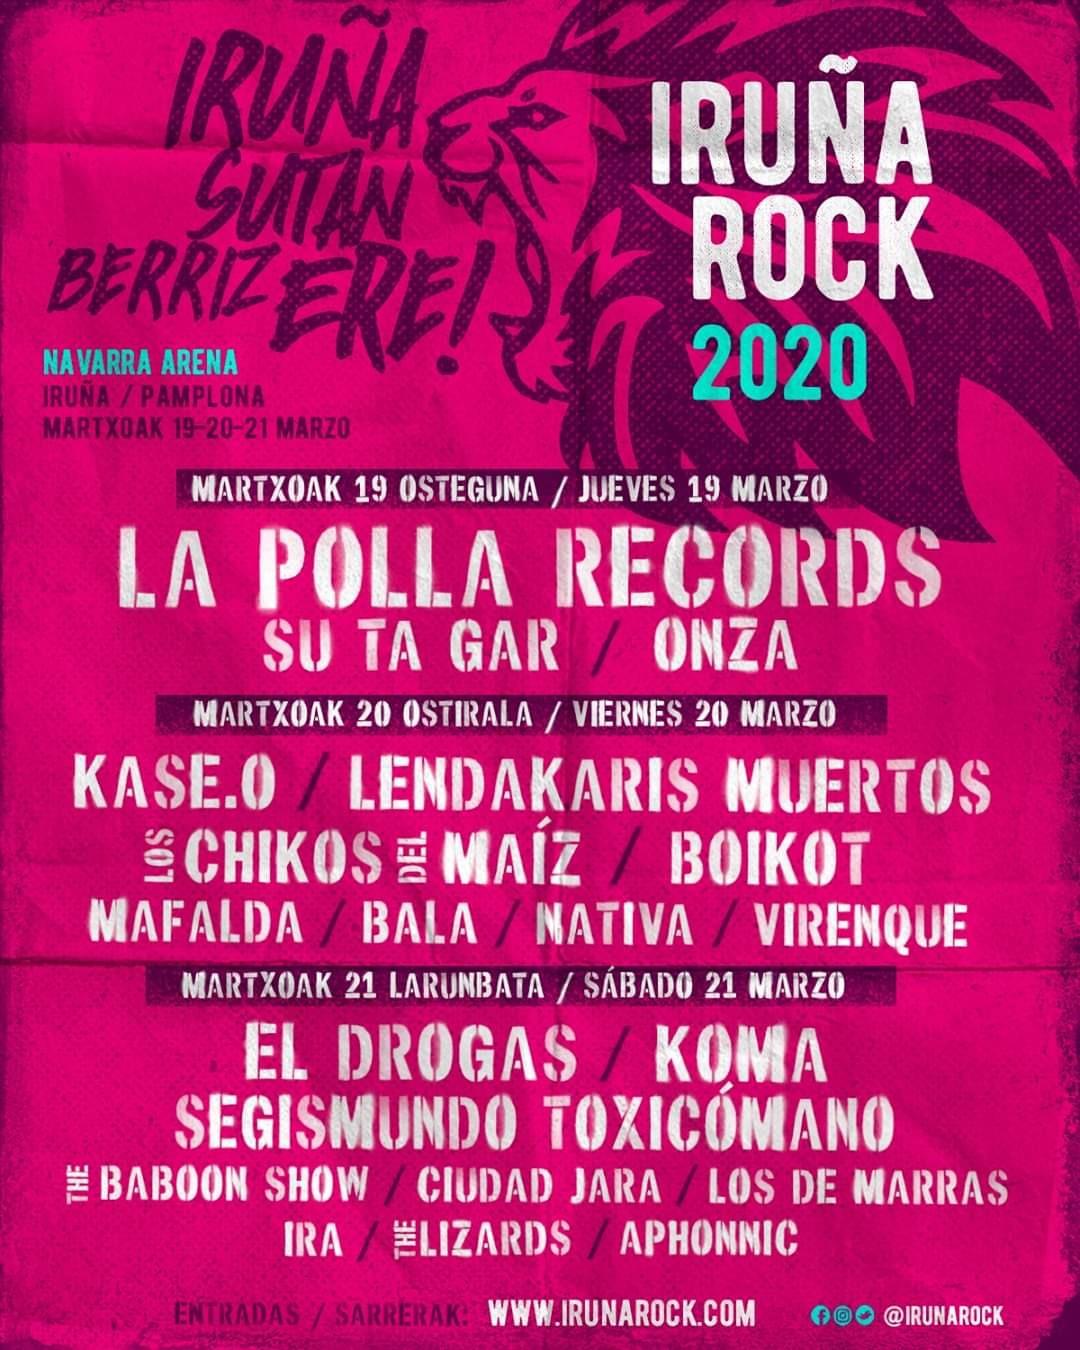 Iruña Rock 2020